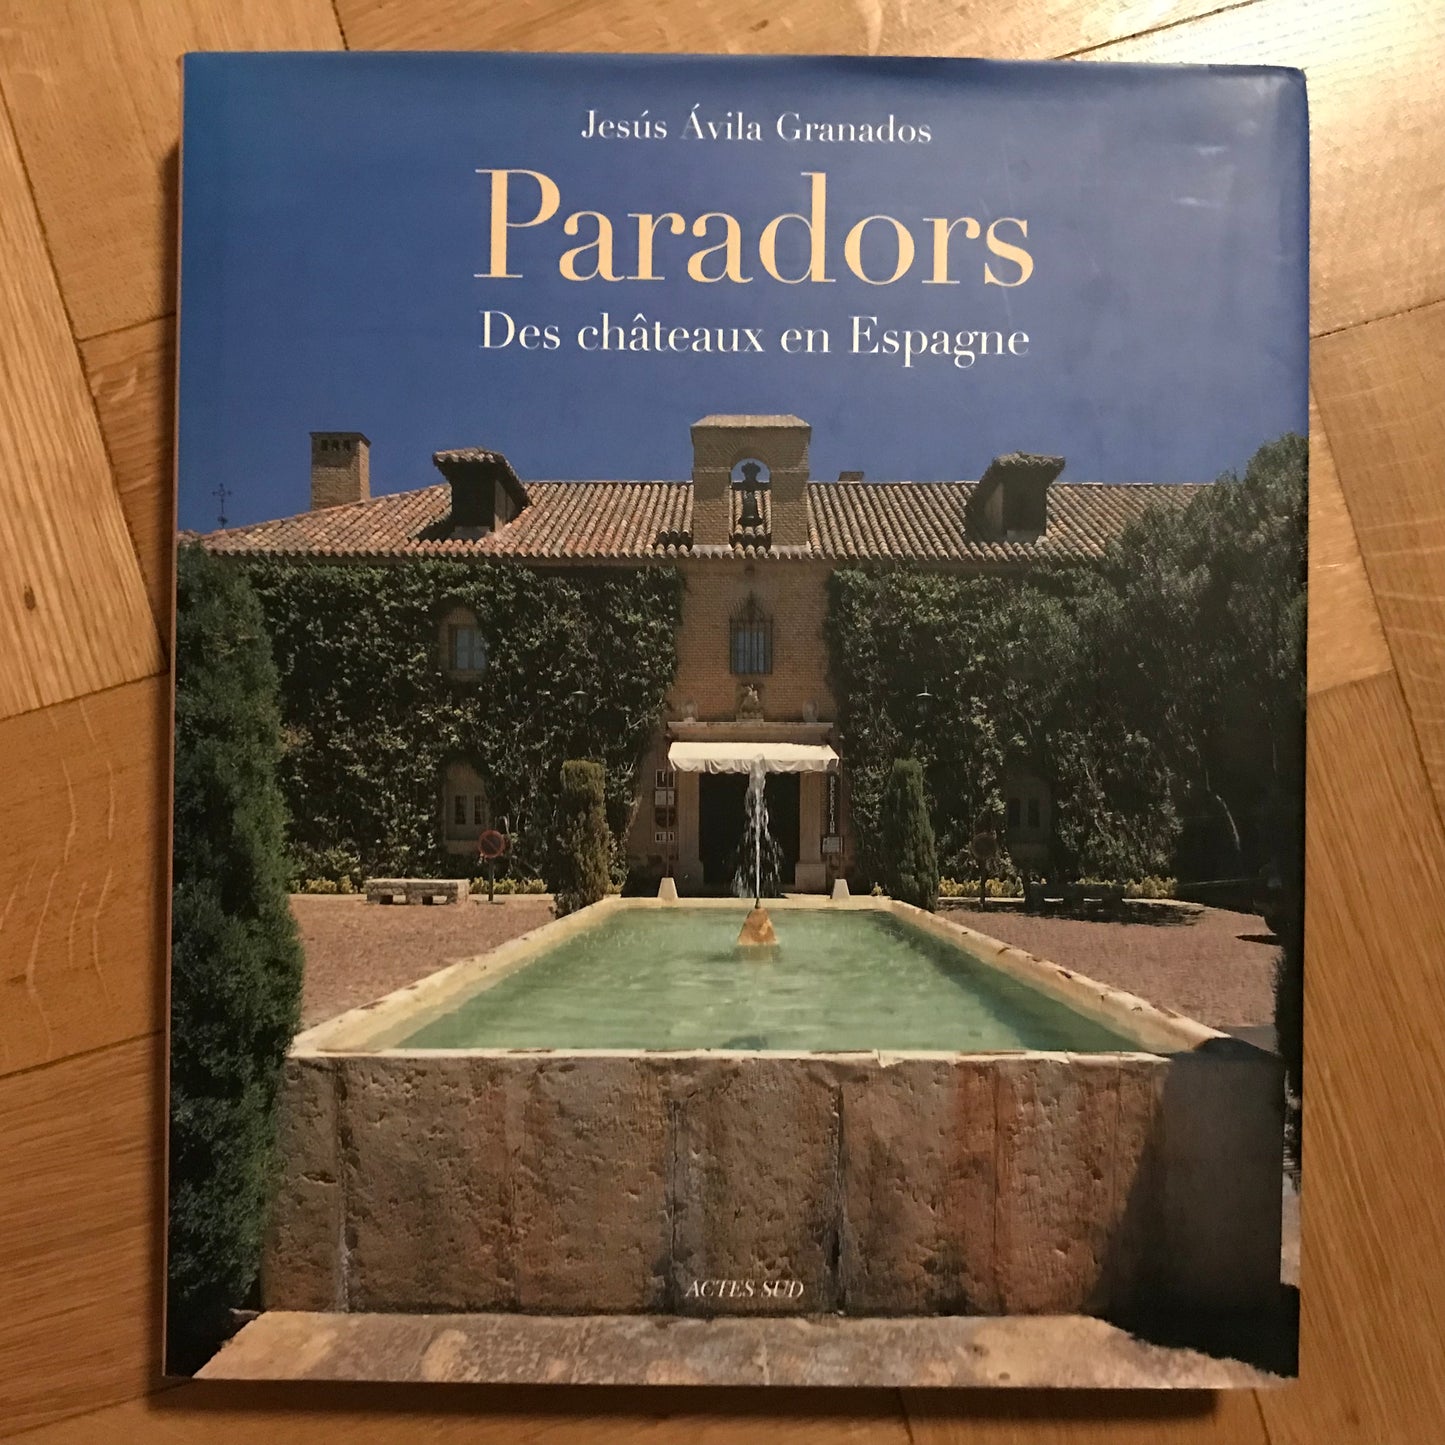 Granada’s, Jesus - Paradors, des châteaux en Espagne